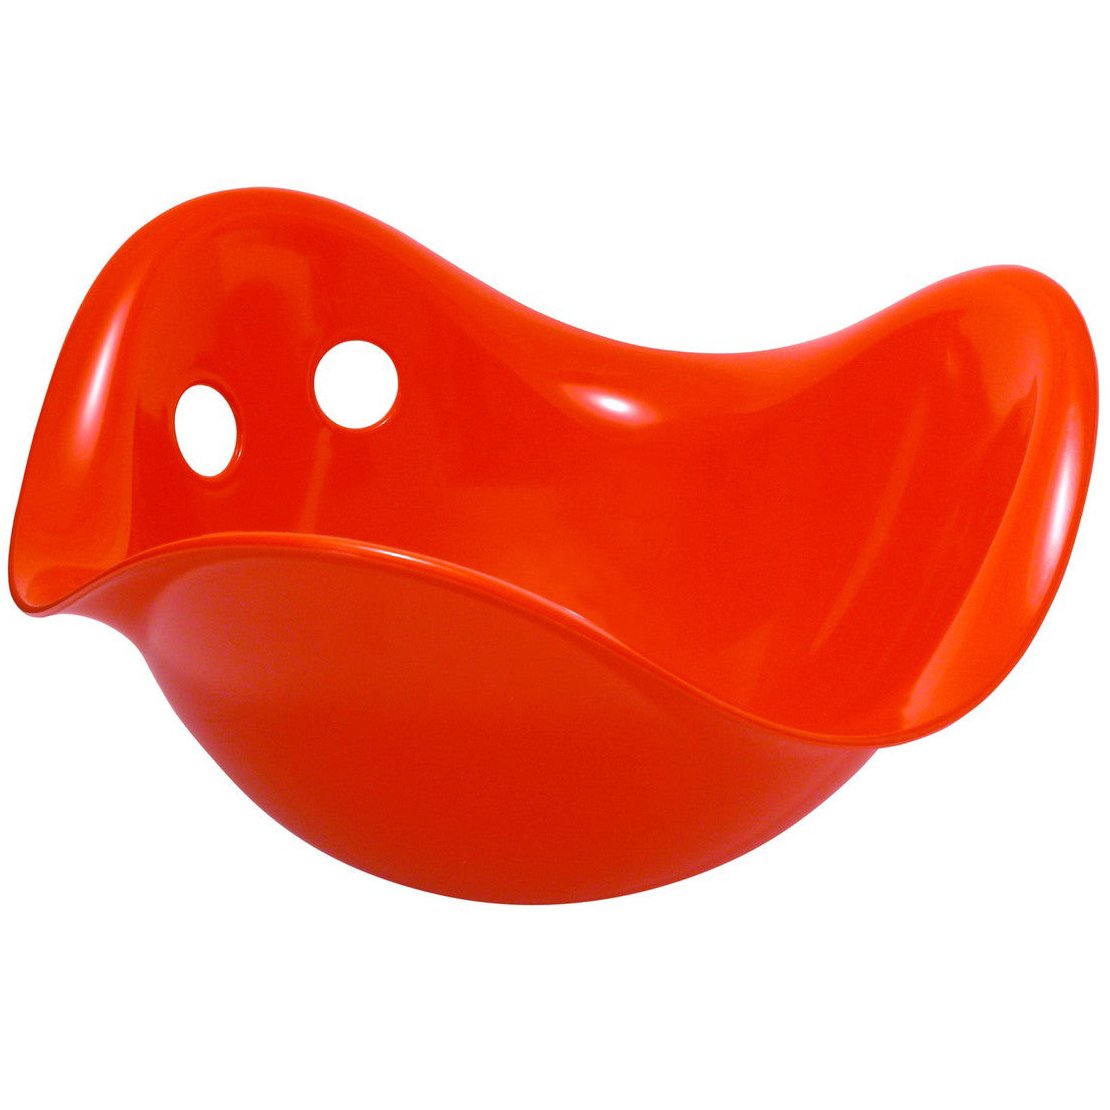 Развивающая игрушка Moluk Билибо, красная (43002) - фото 1